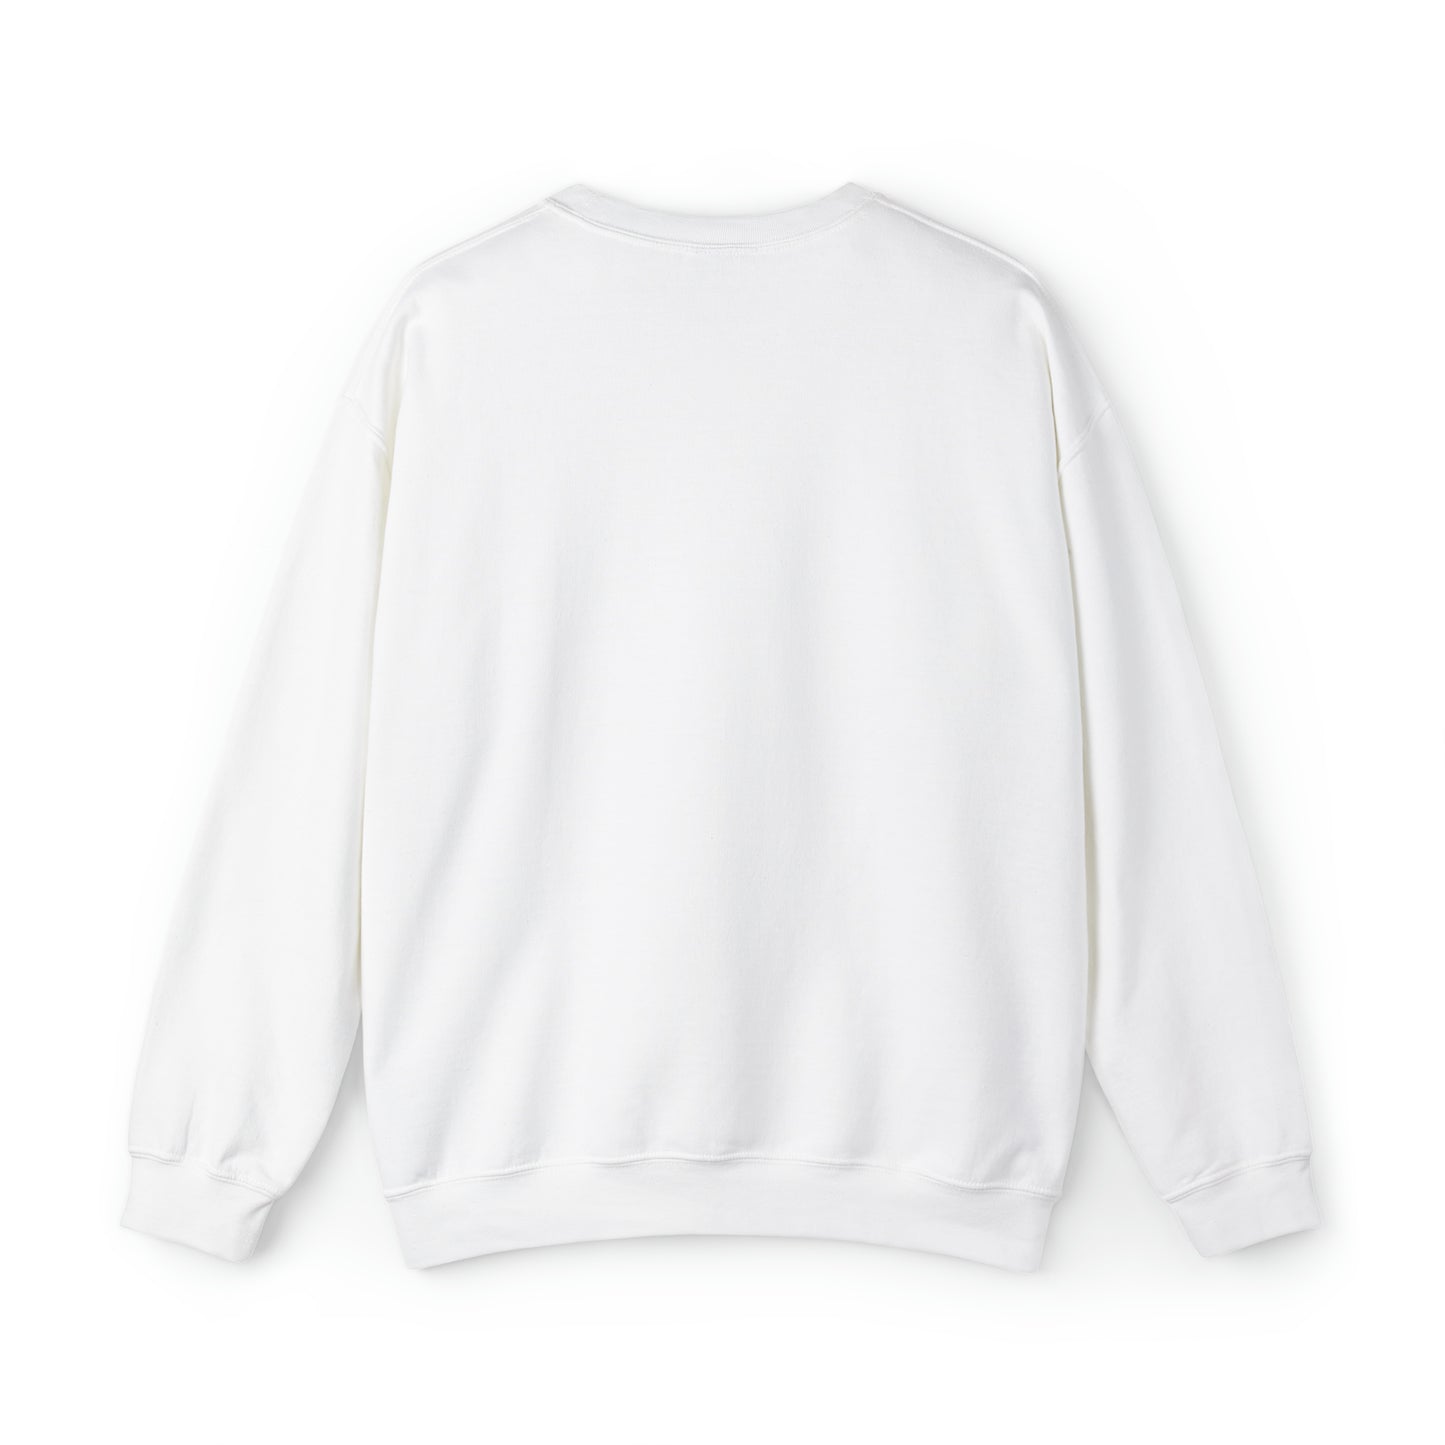 Unisex Heavy Blend™ Crewneck Sweatshirt |Pumpkin Halloween Sweatshirt, Dancing Skeleton Sweatshirt, Pumpkin Sweatshirt, Fall sweatshirts